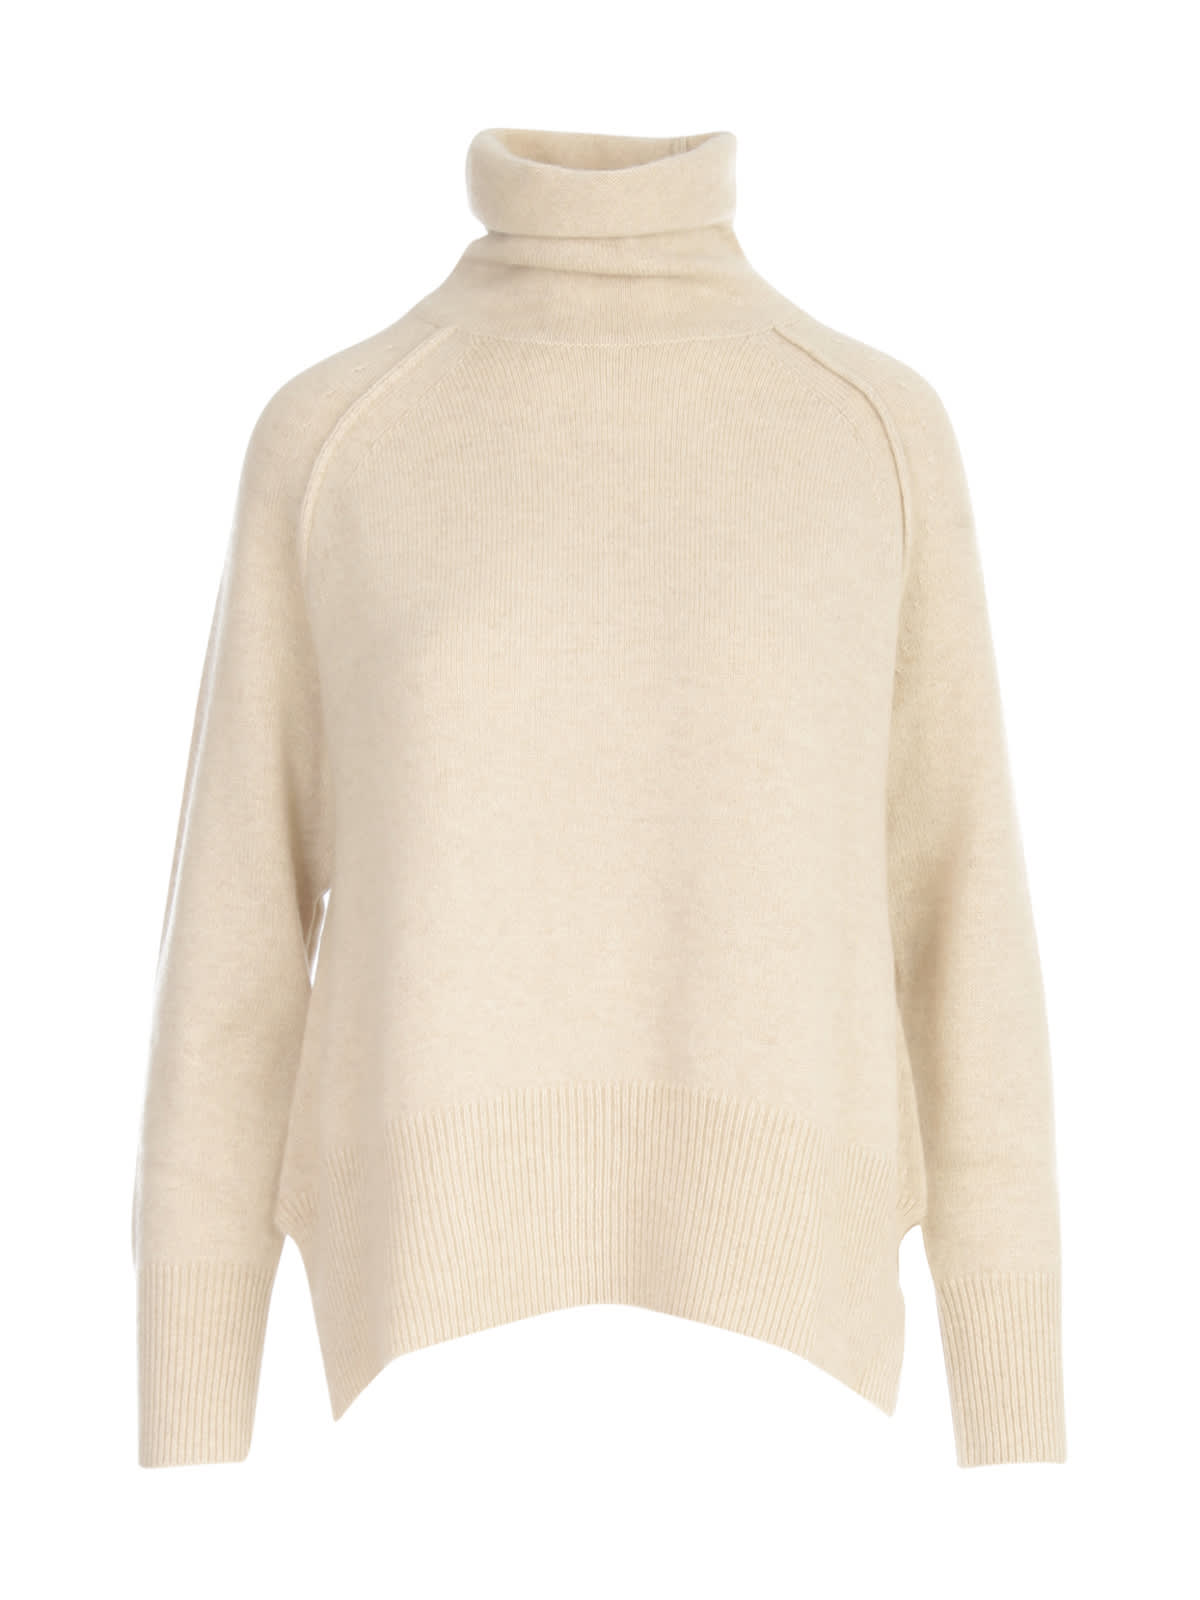 Aspesi External Stitching Sweater